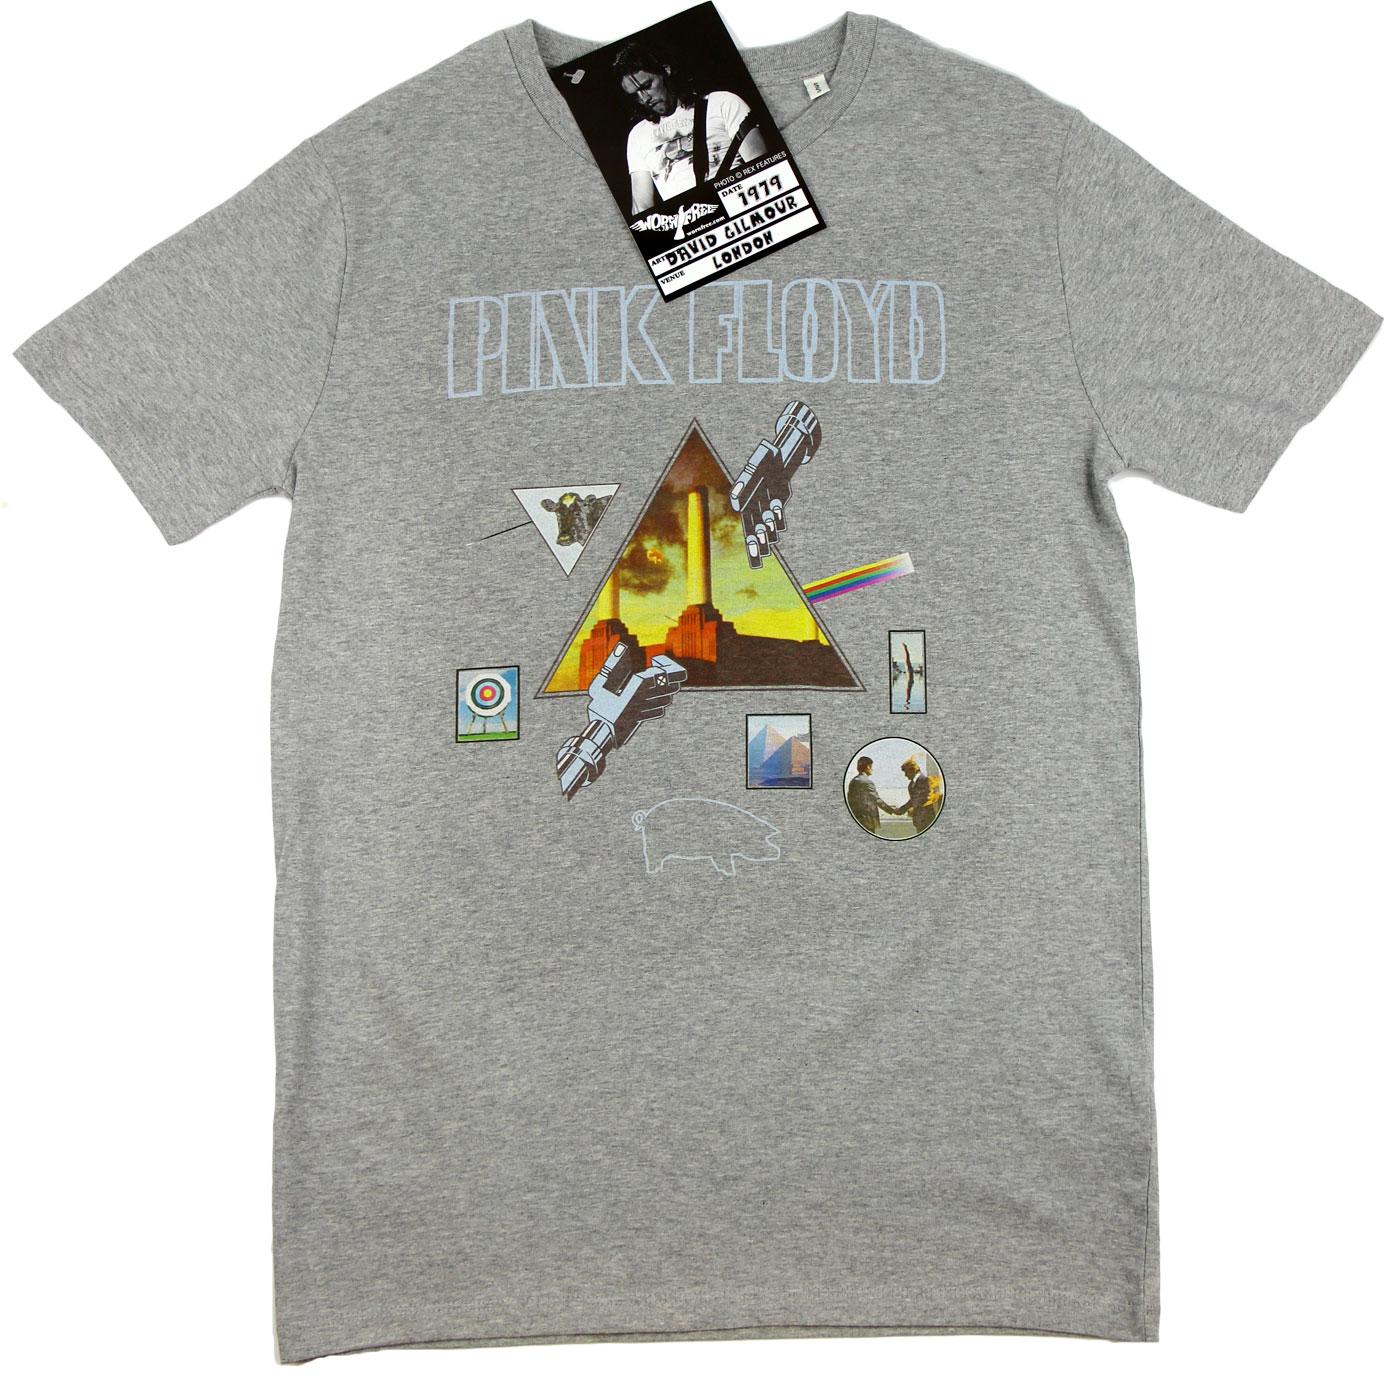 WORN FREE David Gilmour Pink Floyd Albums T-Shirt